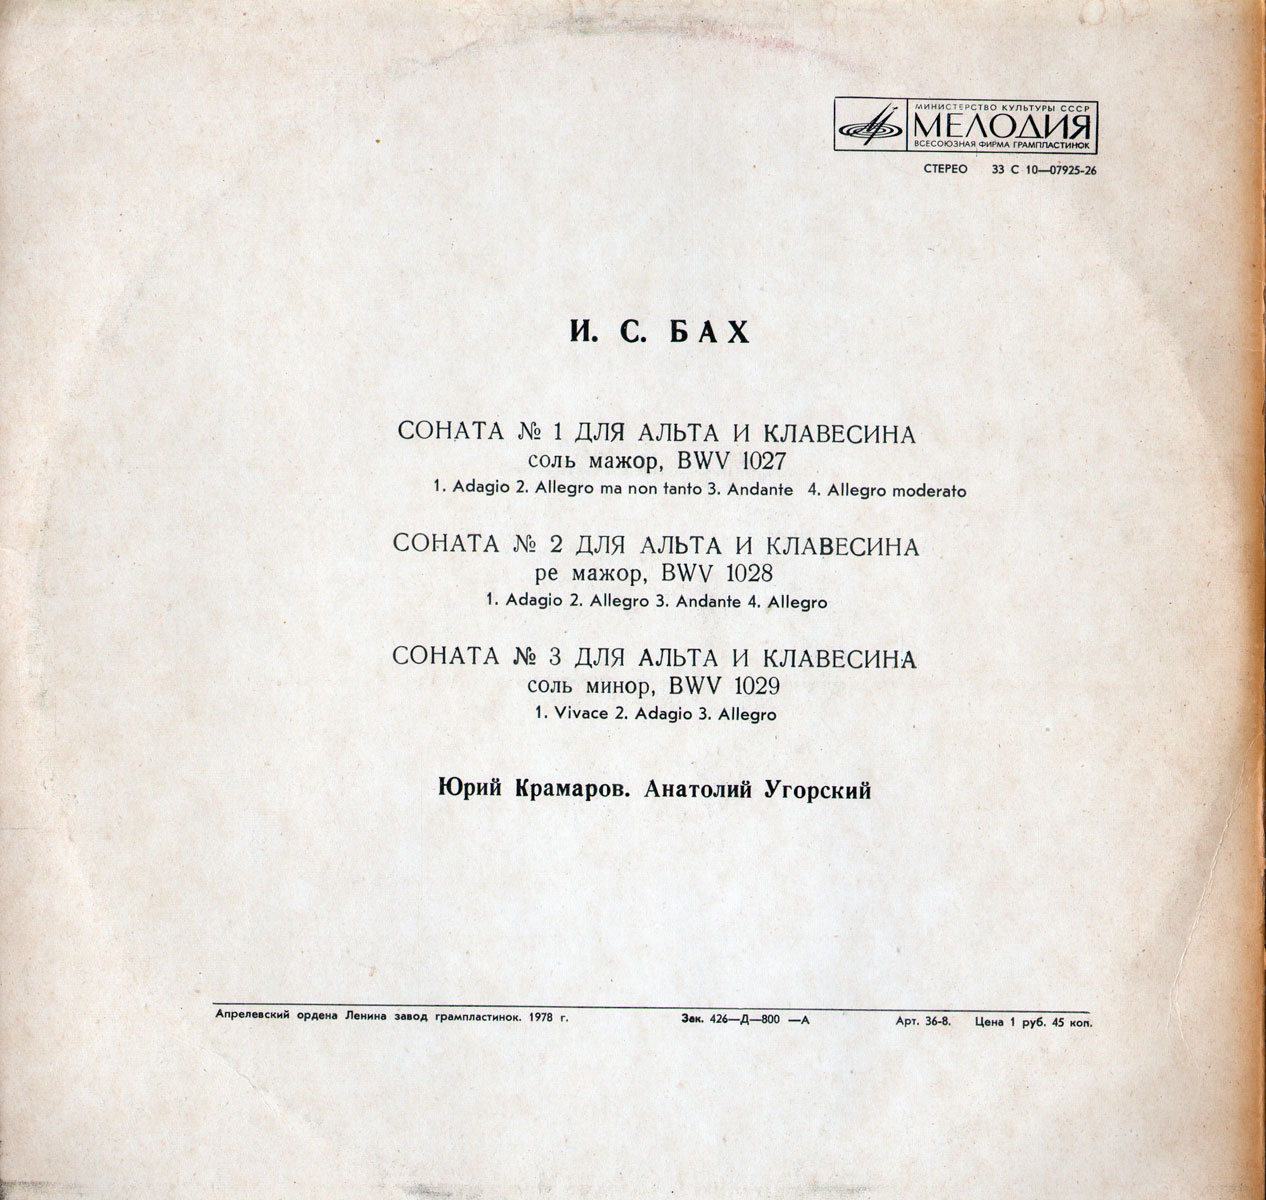 И. С. Бах: Сонаты №№ 1, 2, 3 для альта и клавесина (Ю. Крамаров, А. Угорский)